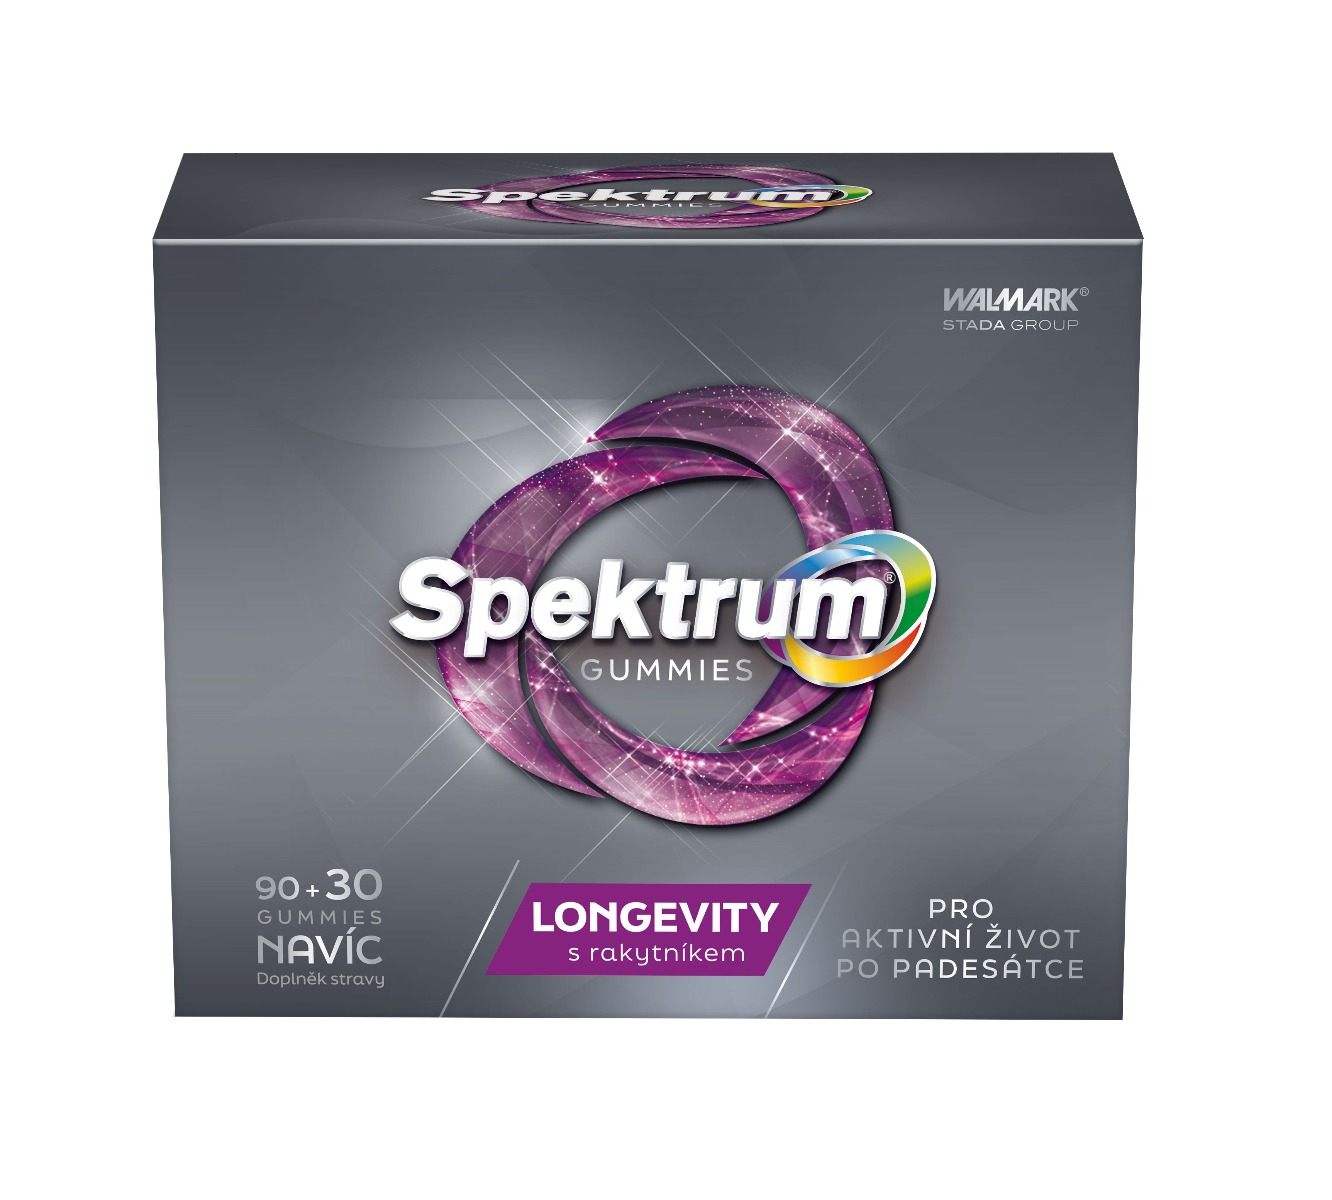 Spektrum Gummies Longevity 90+30 tablet Spektrum